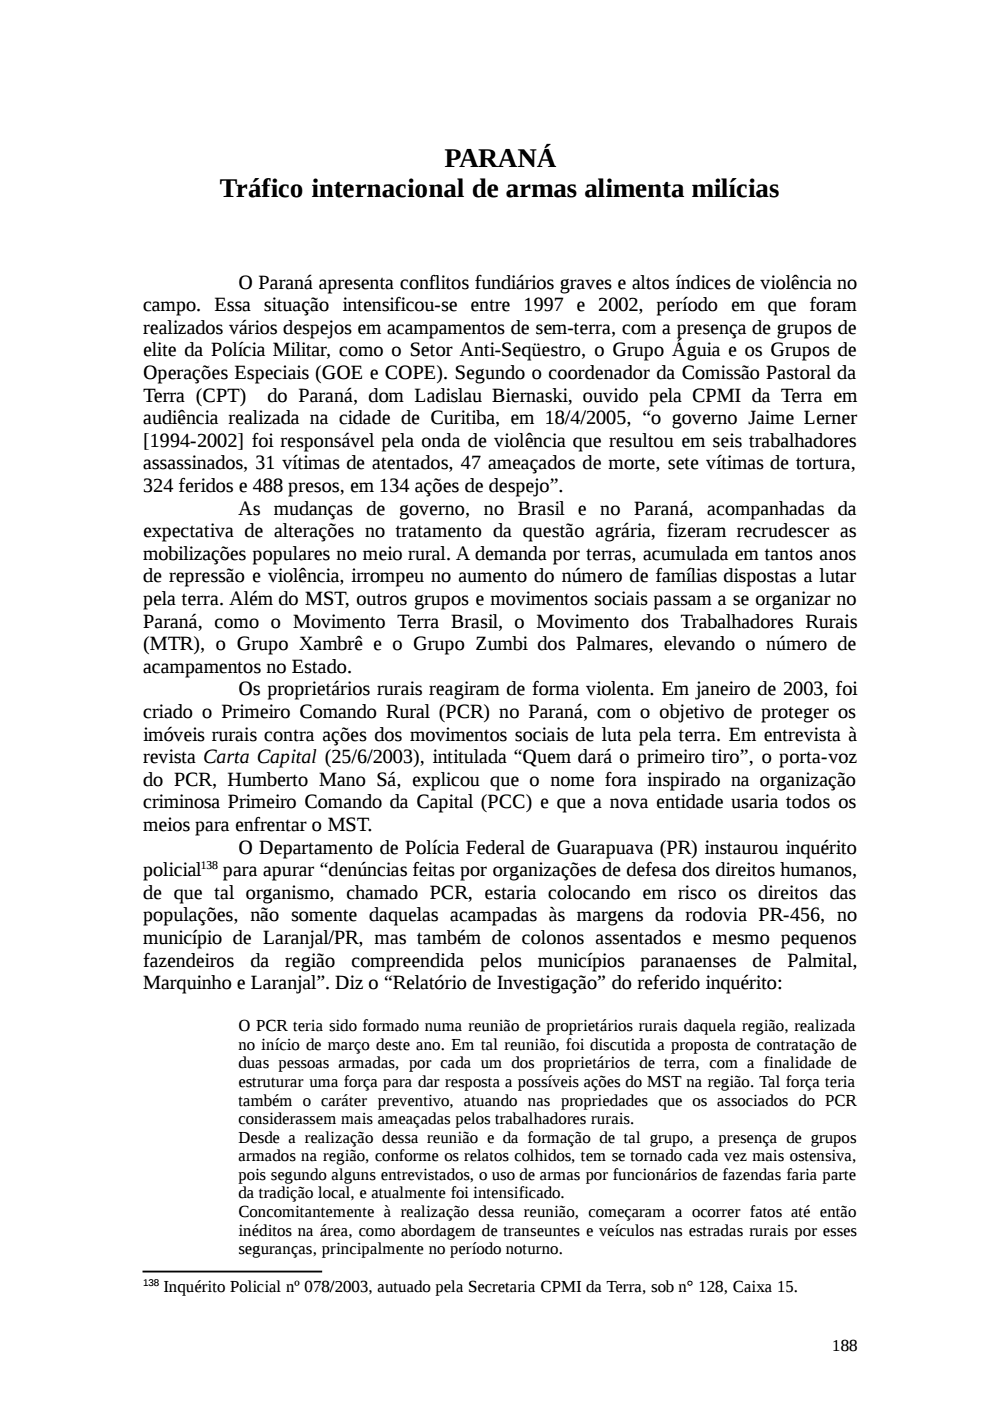 Page 188 from Relatório final da comissão